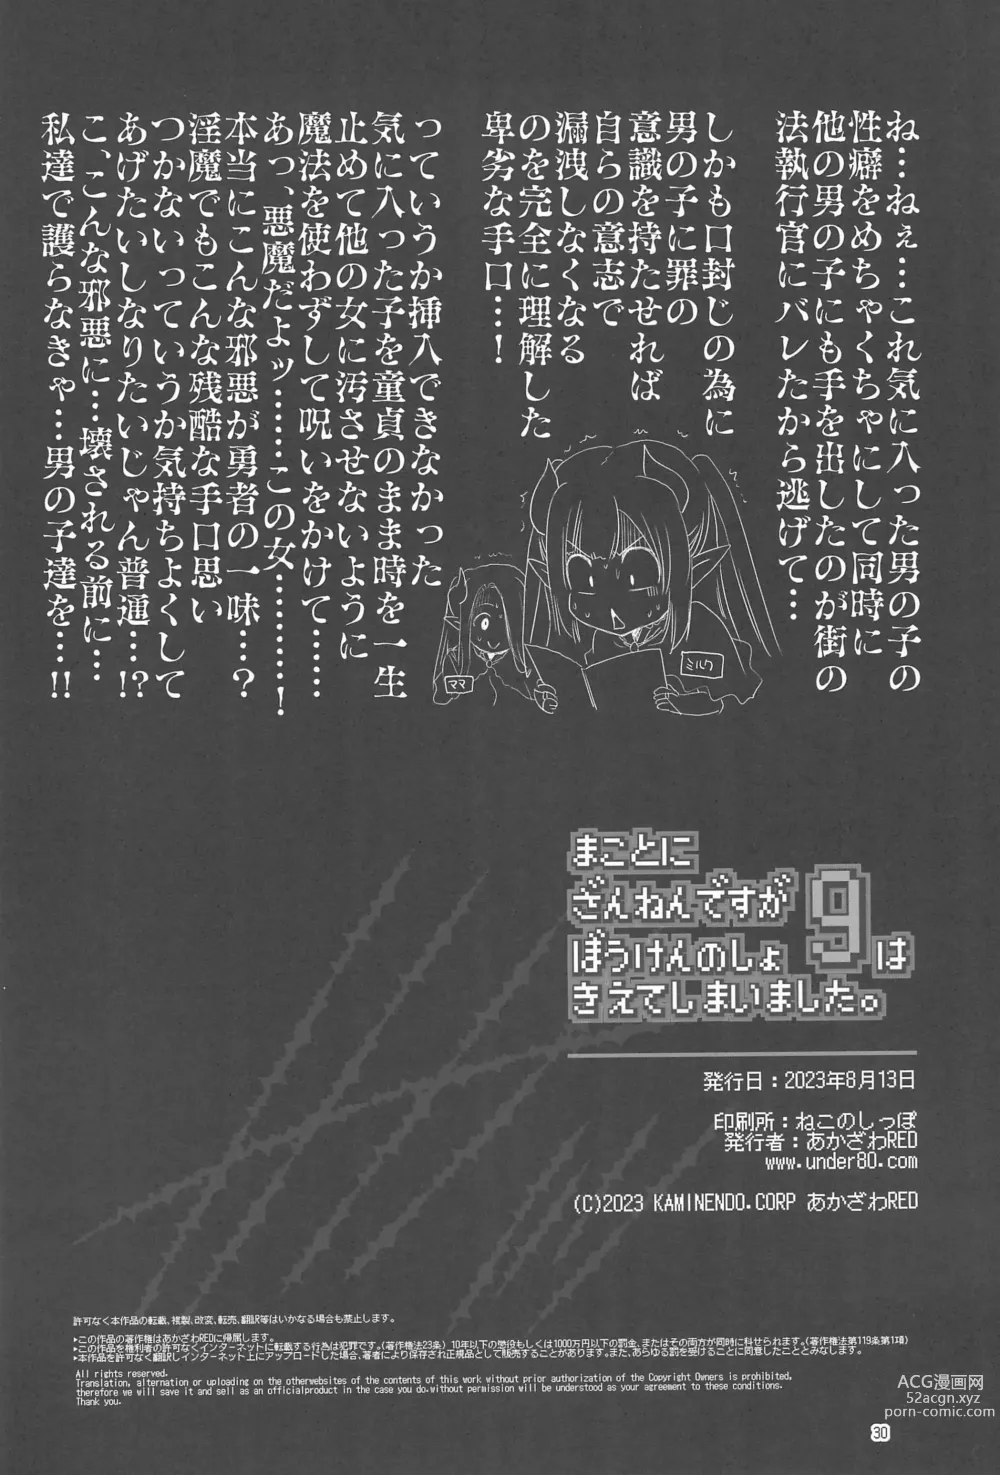 Page 30 of doujinshi Makotoni Zannen desu ga Bouken no Sho 9 wa Kiete Shimaimashita.